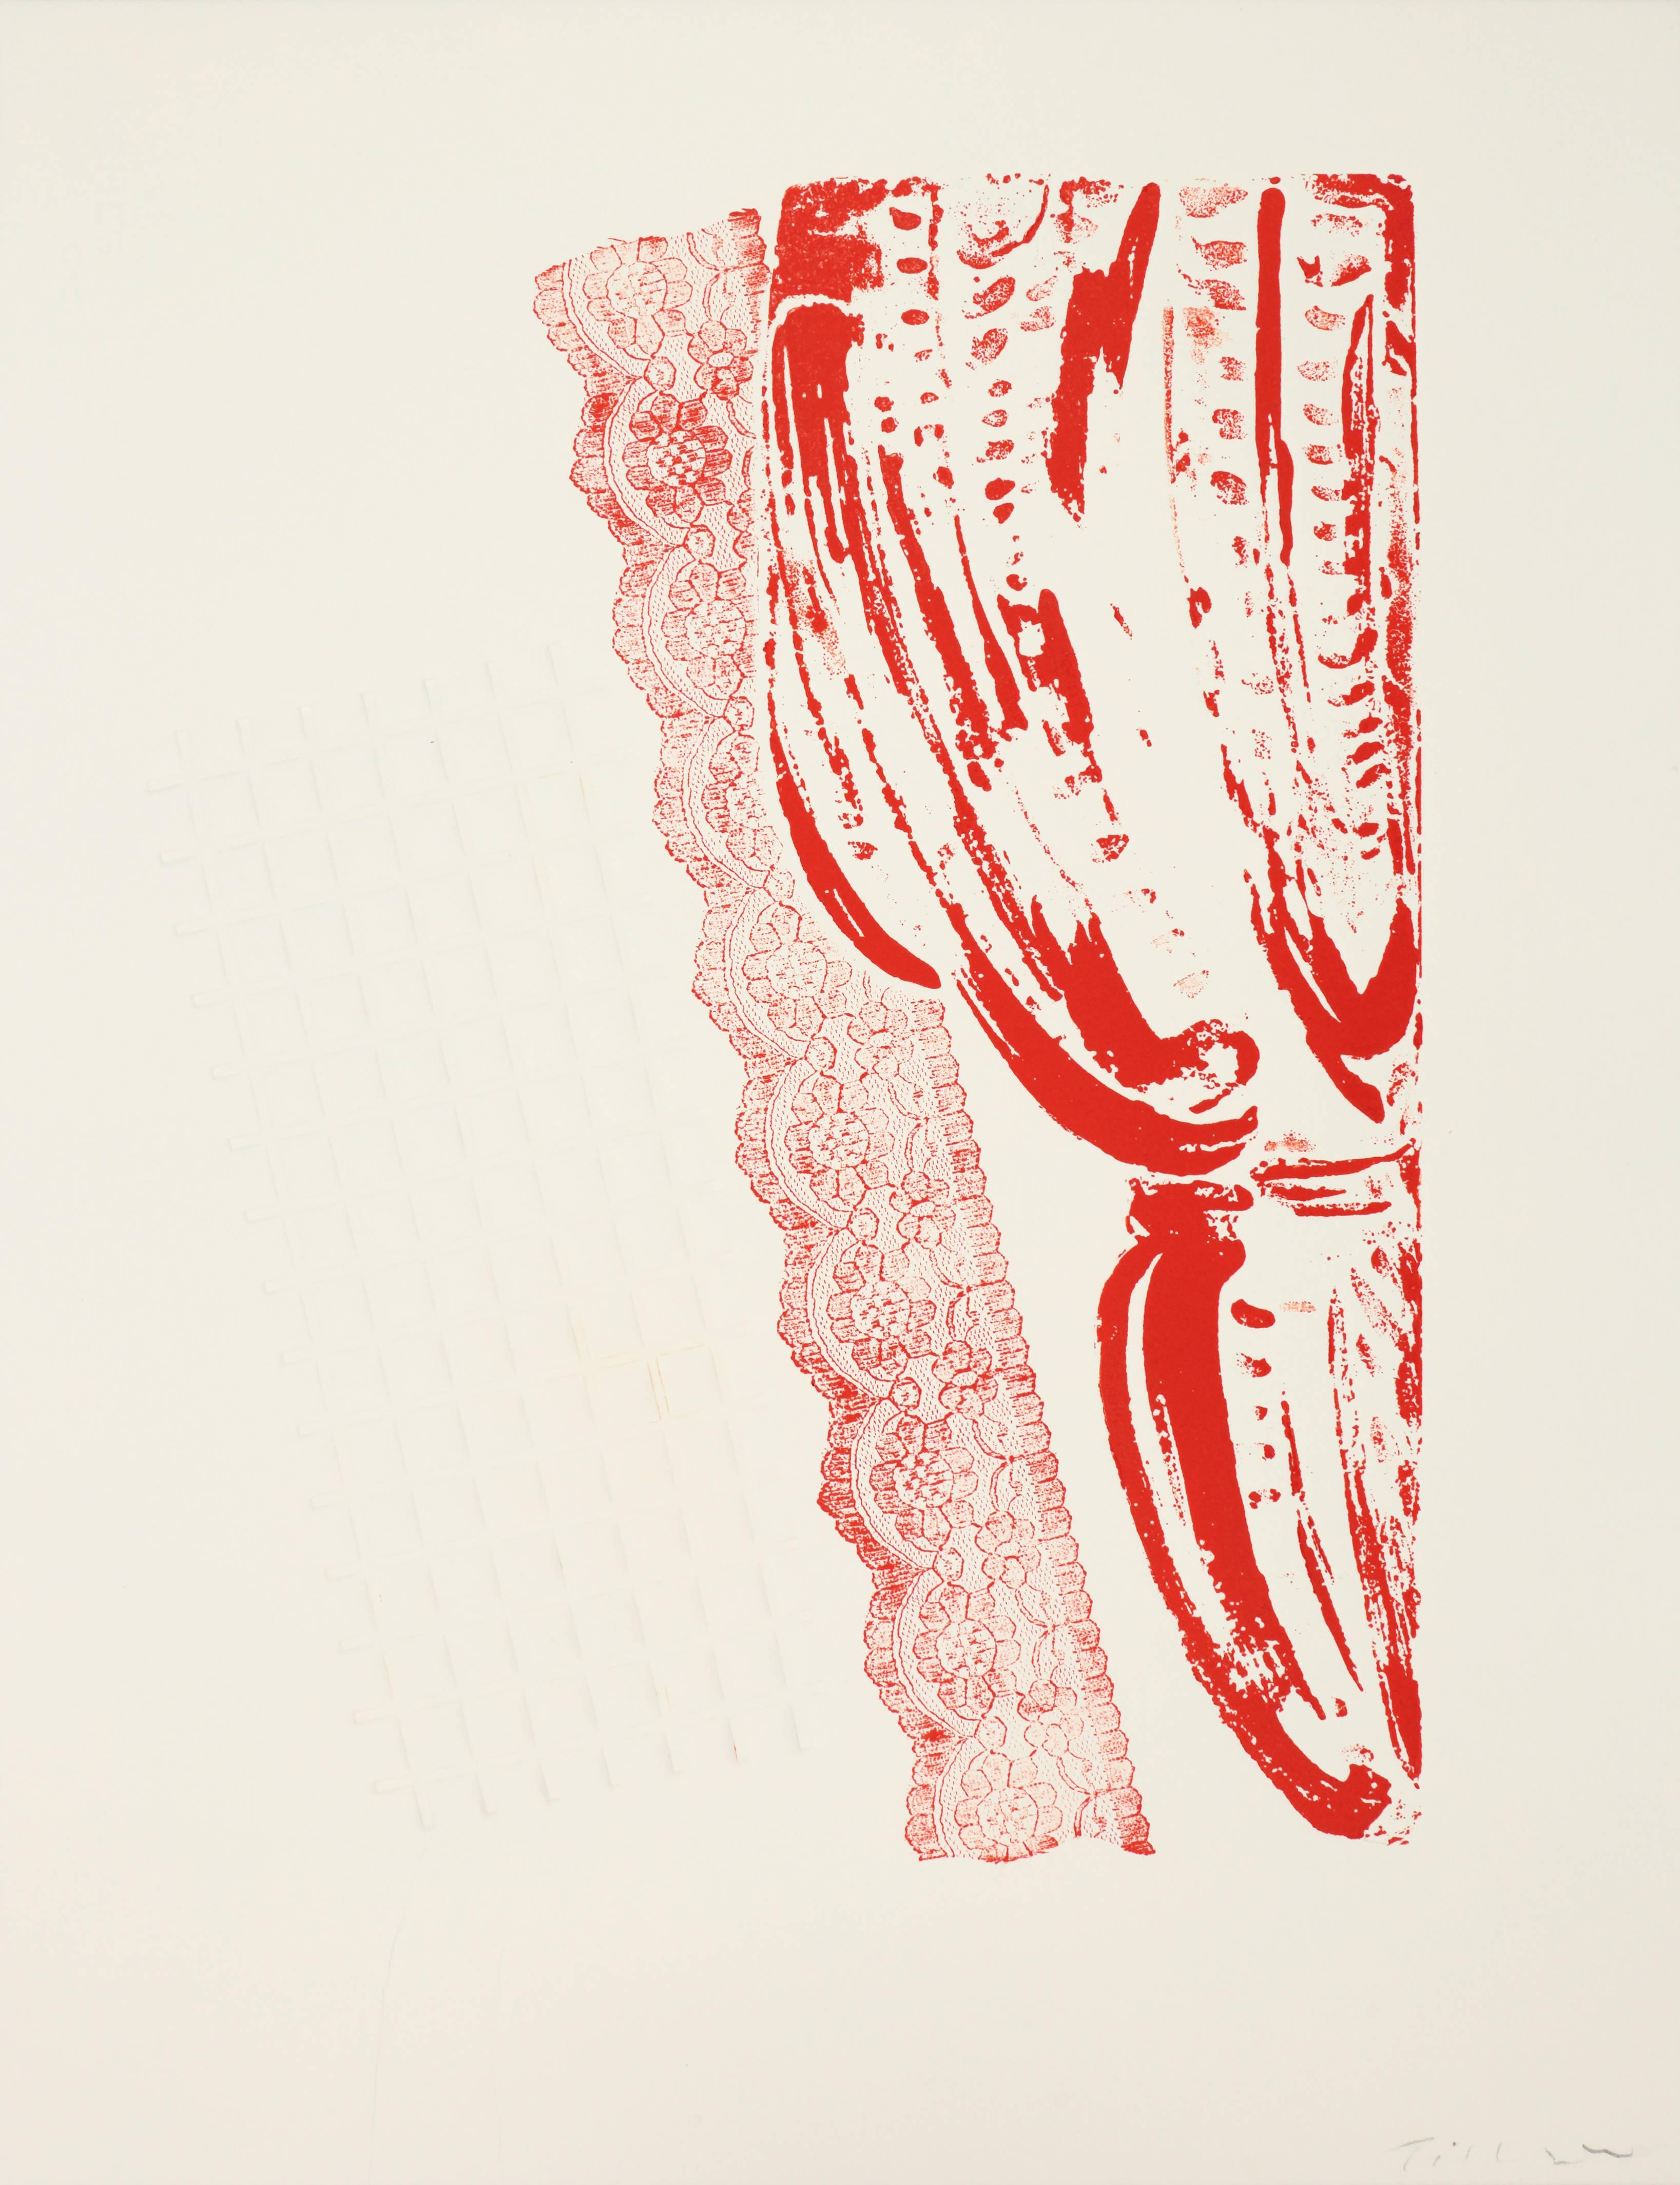 Abstract Print William Tillyer - Intérieur de Fontenay aux Roses - Le rideau rouge